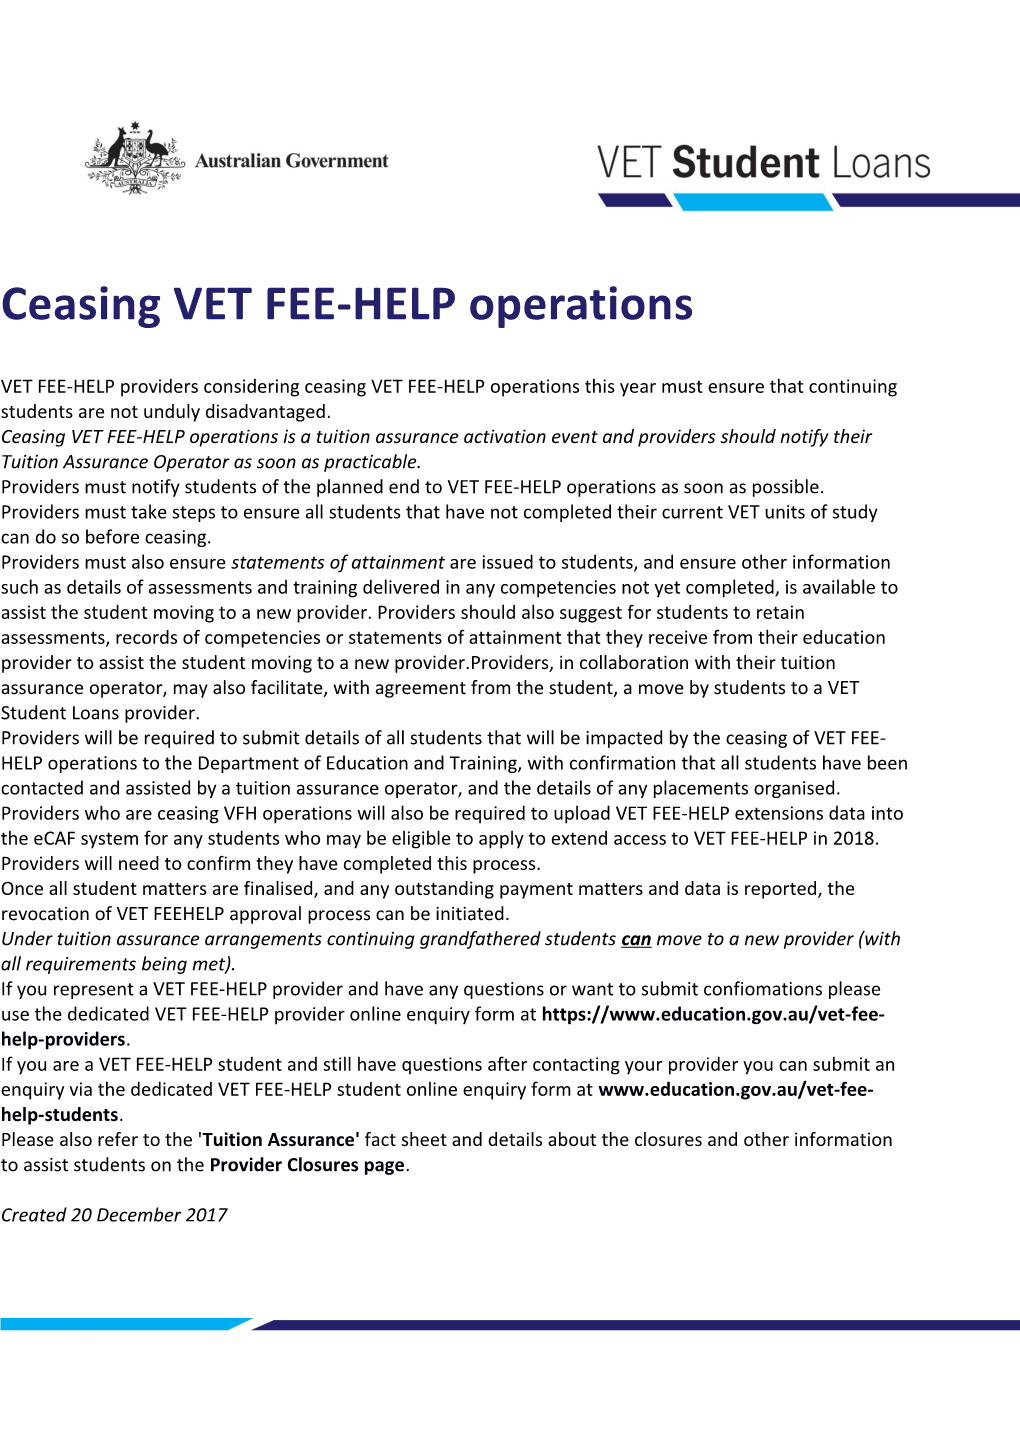 Ceasing VET FEE-HELP Operations